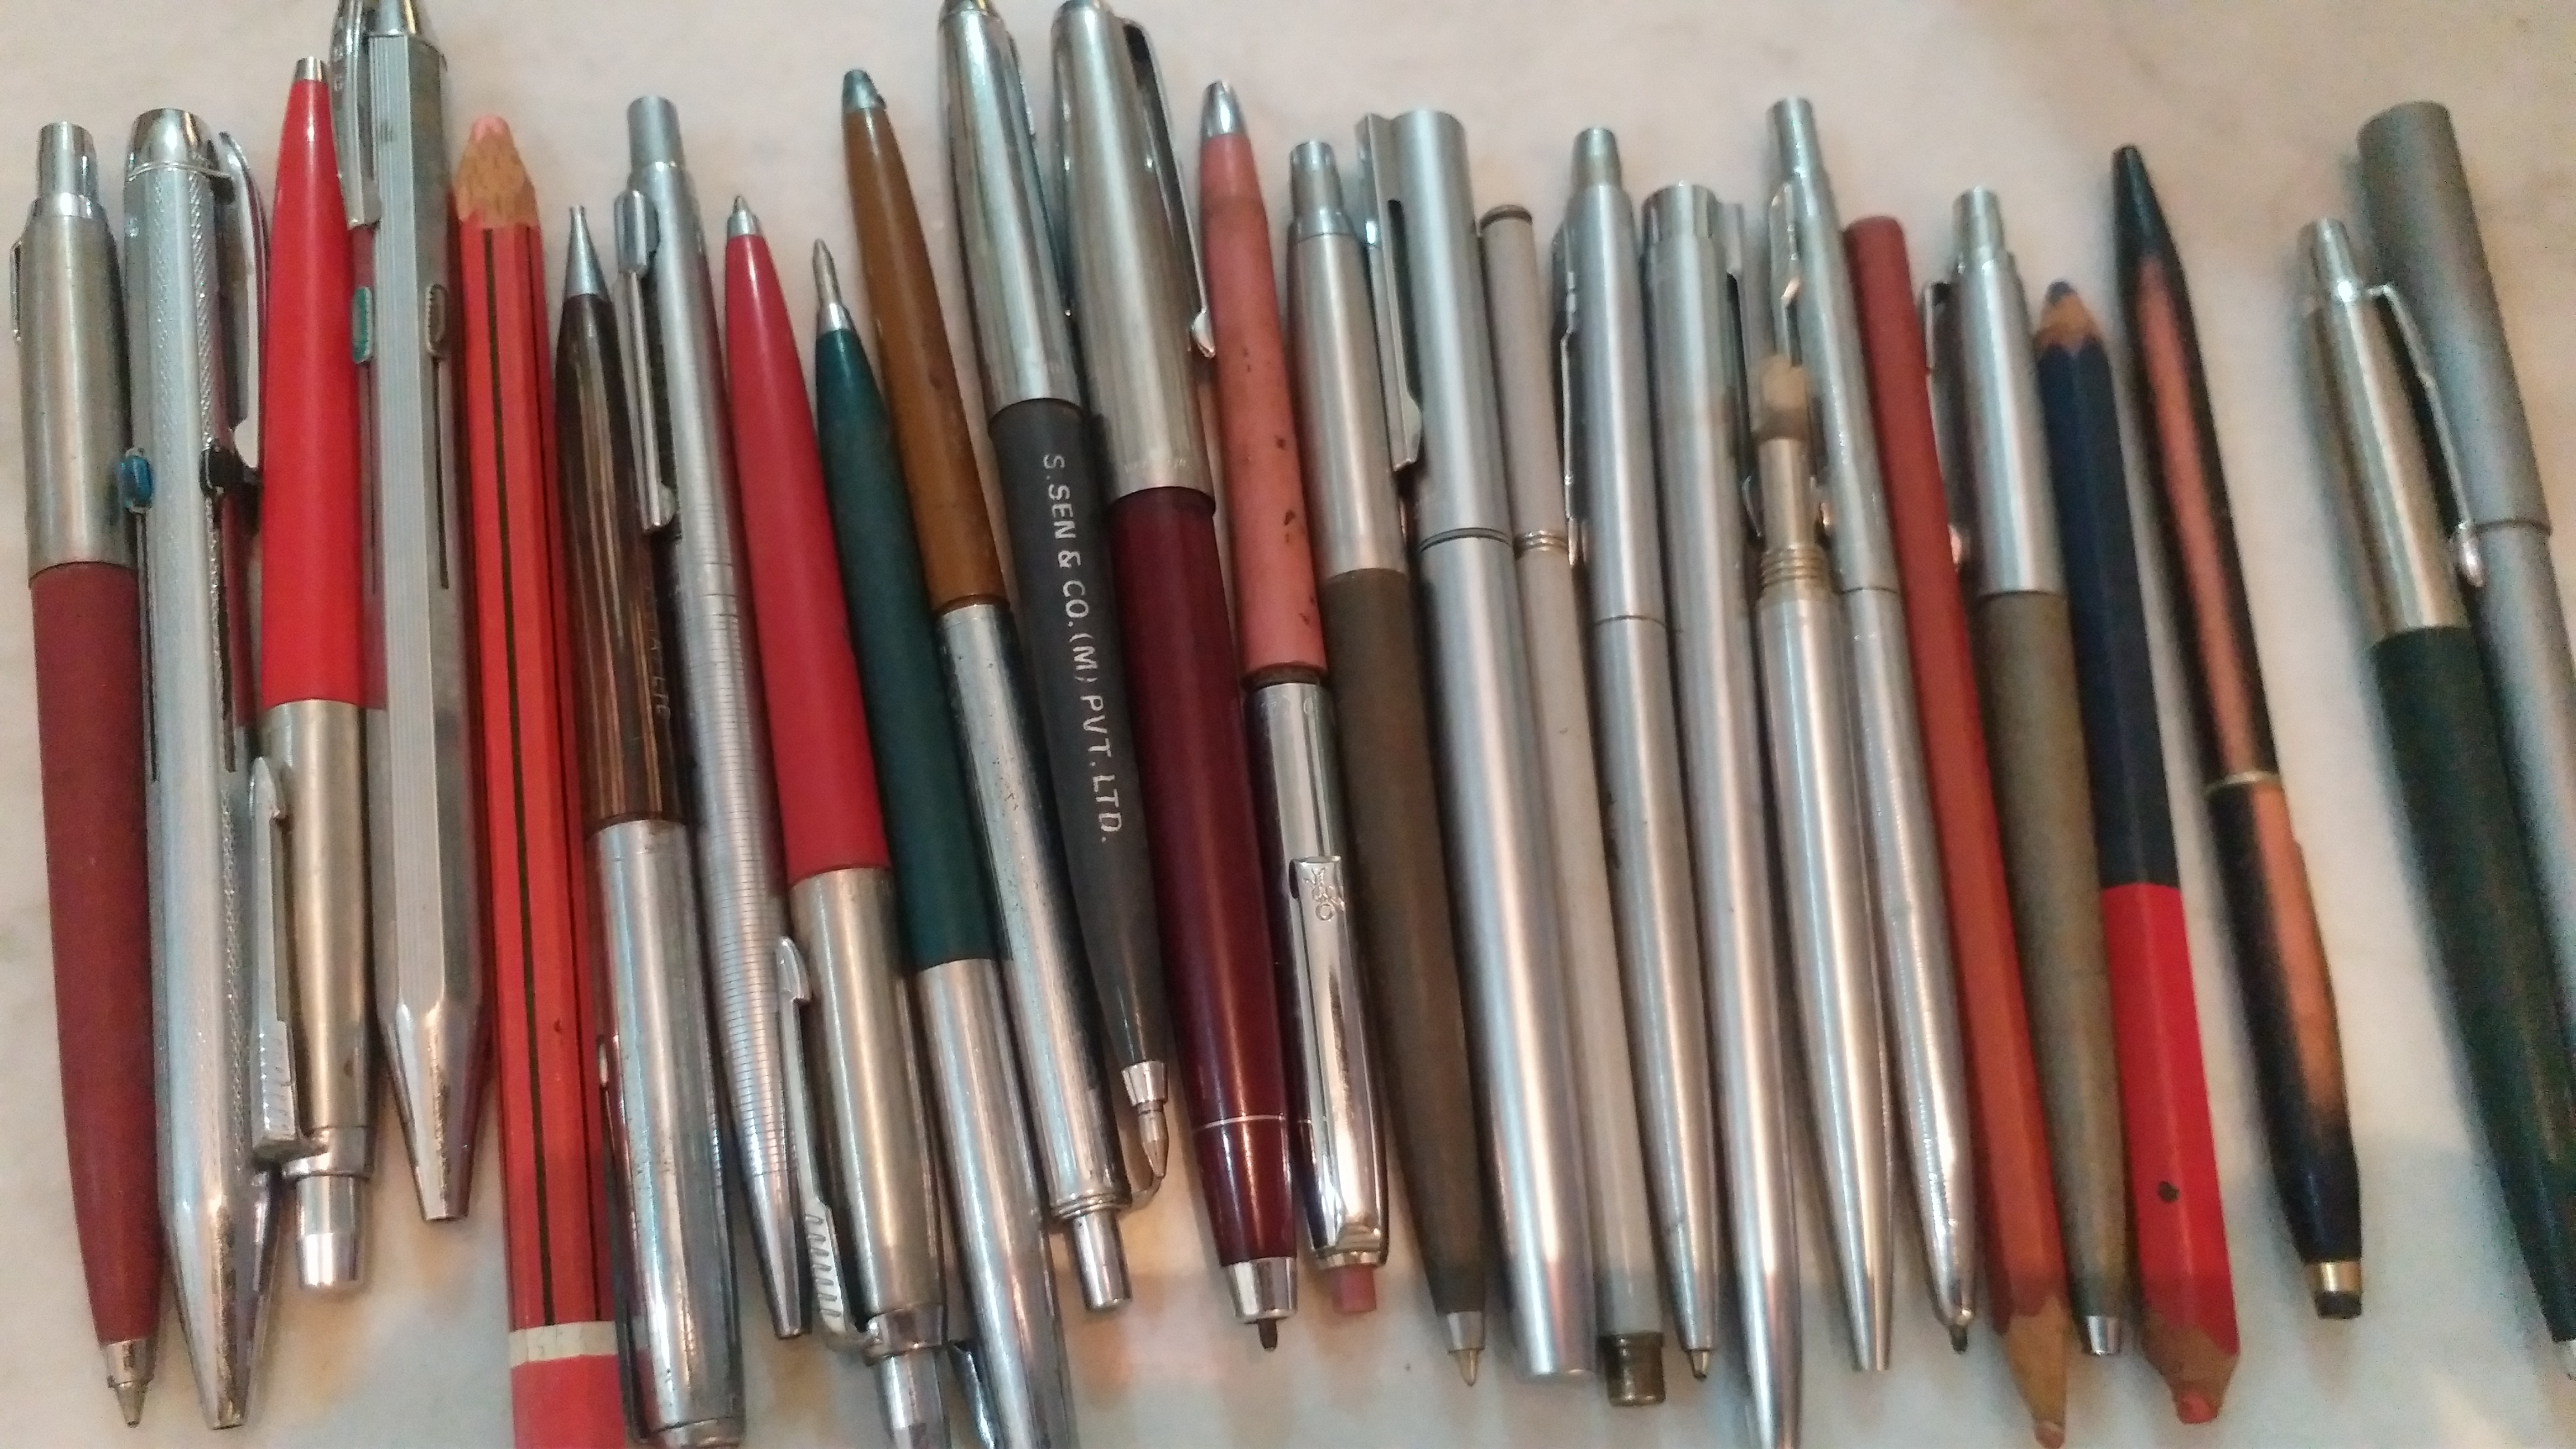 Old Pens In Bank Locker